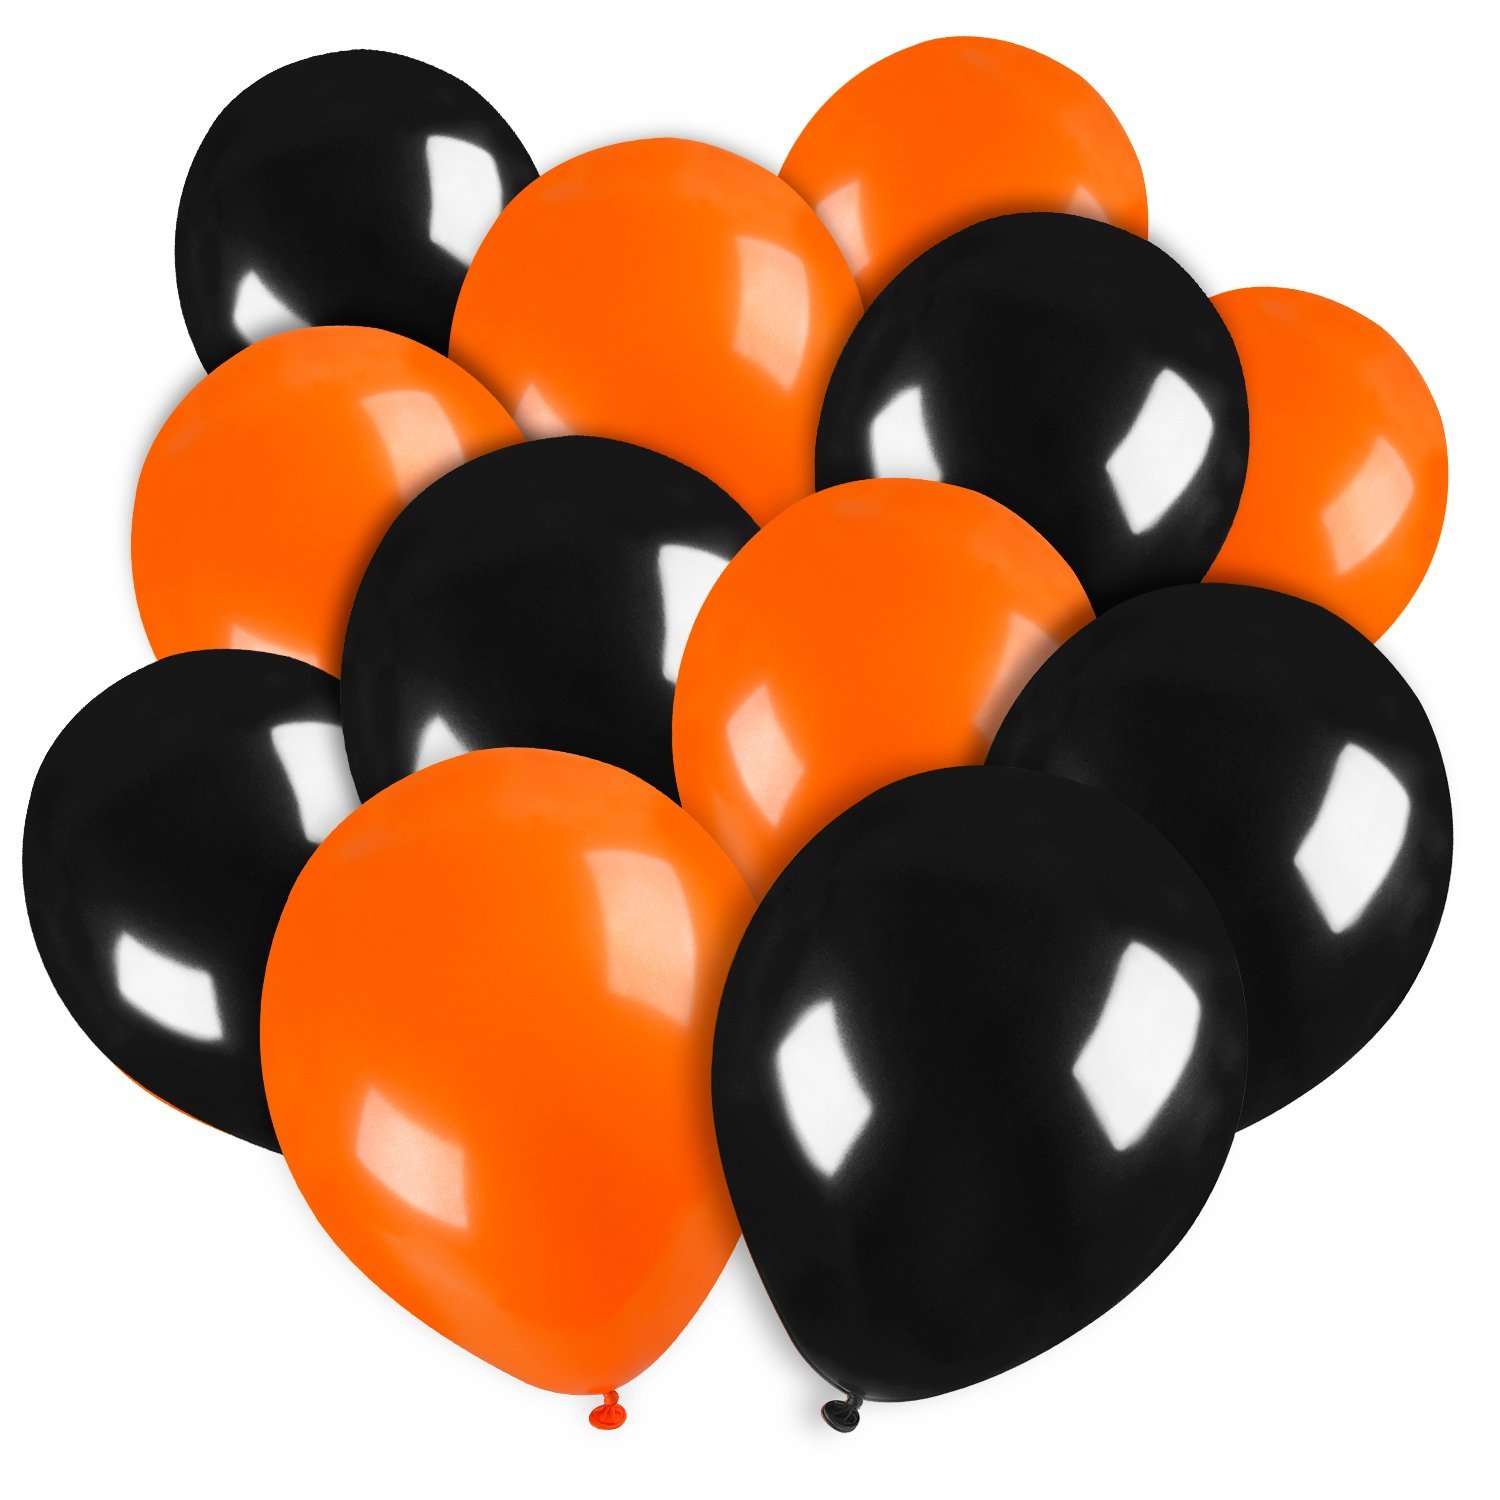 50 Ballons latex oranges et noirs